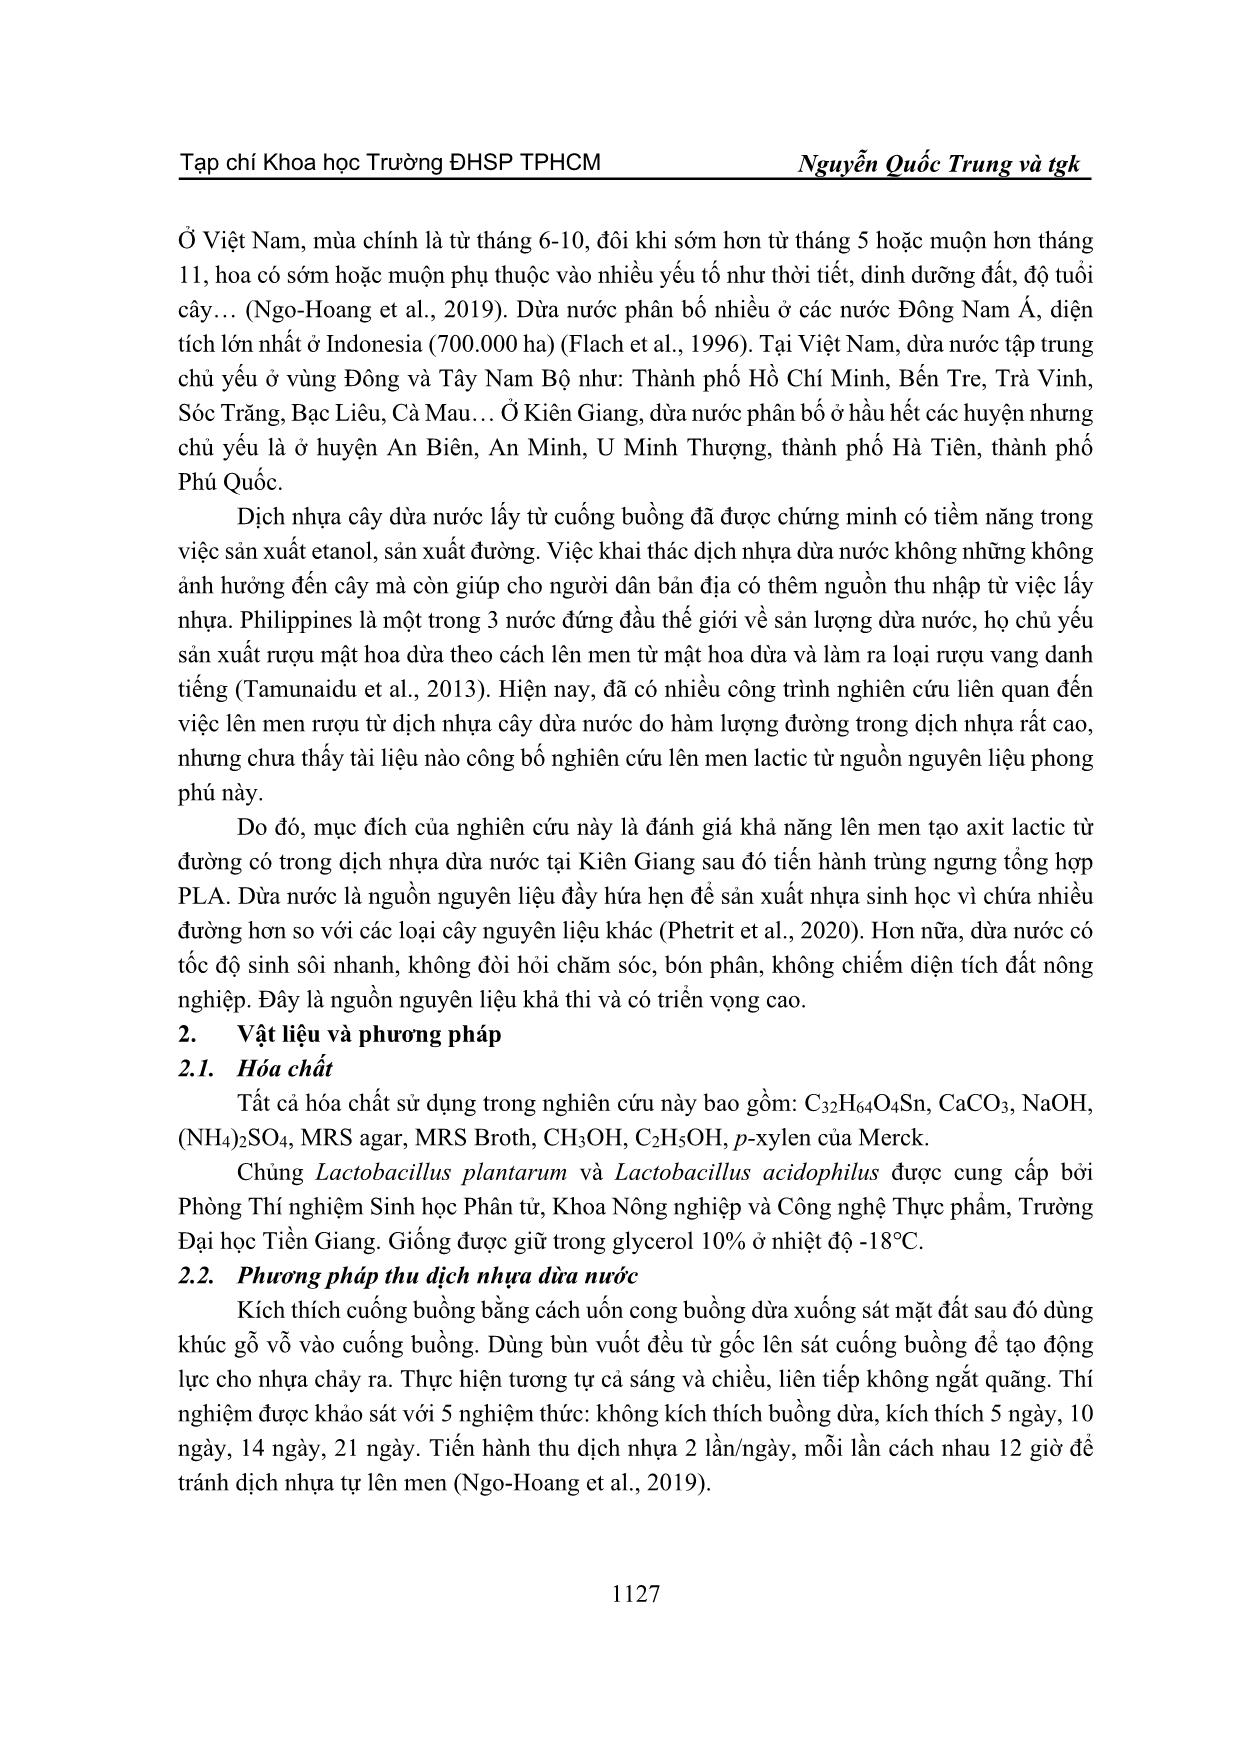 Nghiên cứu tổng hợp poly(lactic axit) từ dịch nhựa cây dừa nước Kiên Giang (nypa fruticans) trang 2